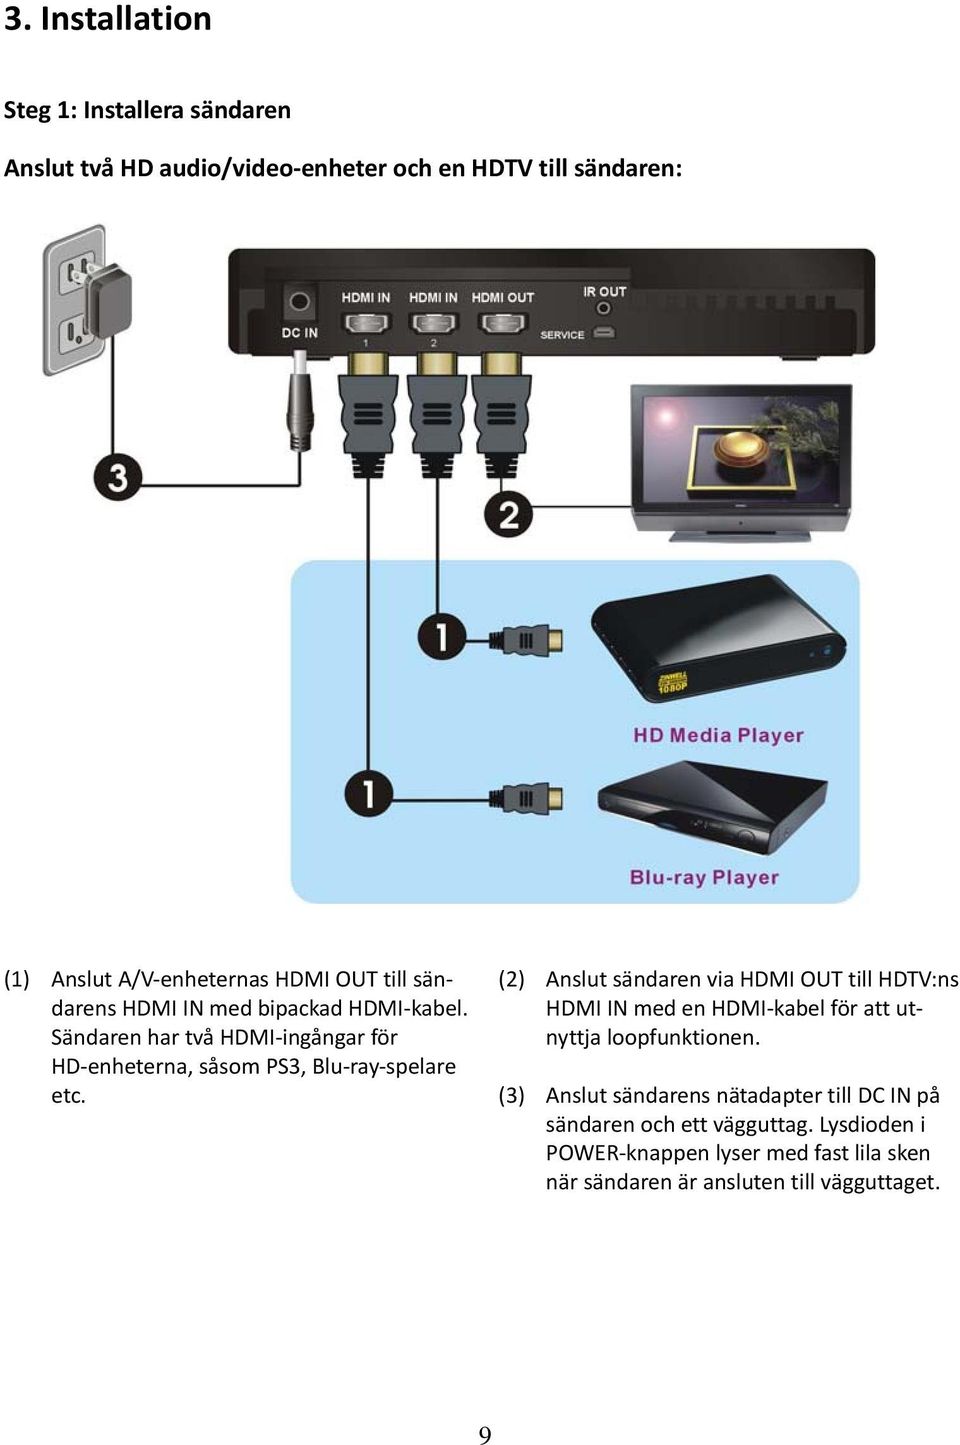 (2) Anslut sändaren via HDMI OUT till HDTV:ns HDMI IN med en HDMI kabel för att utnyttja loopfunktionen.